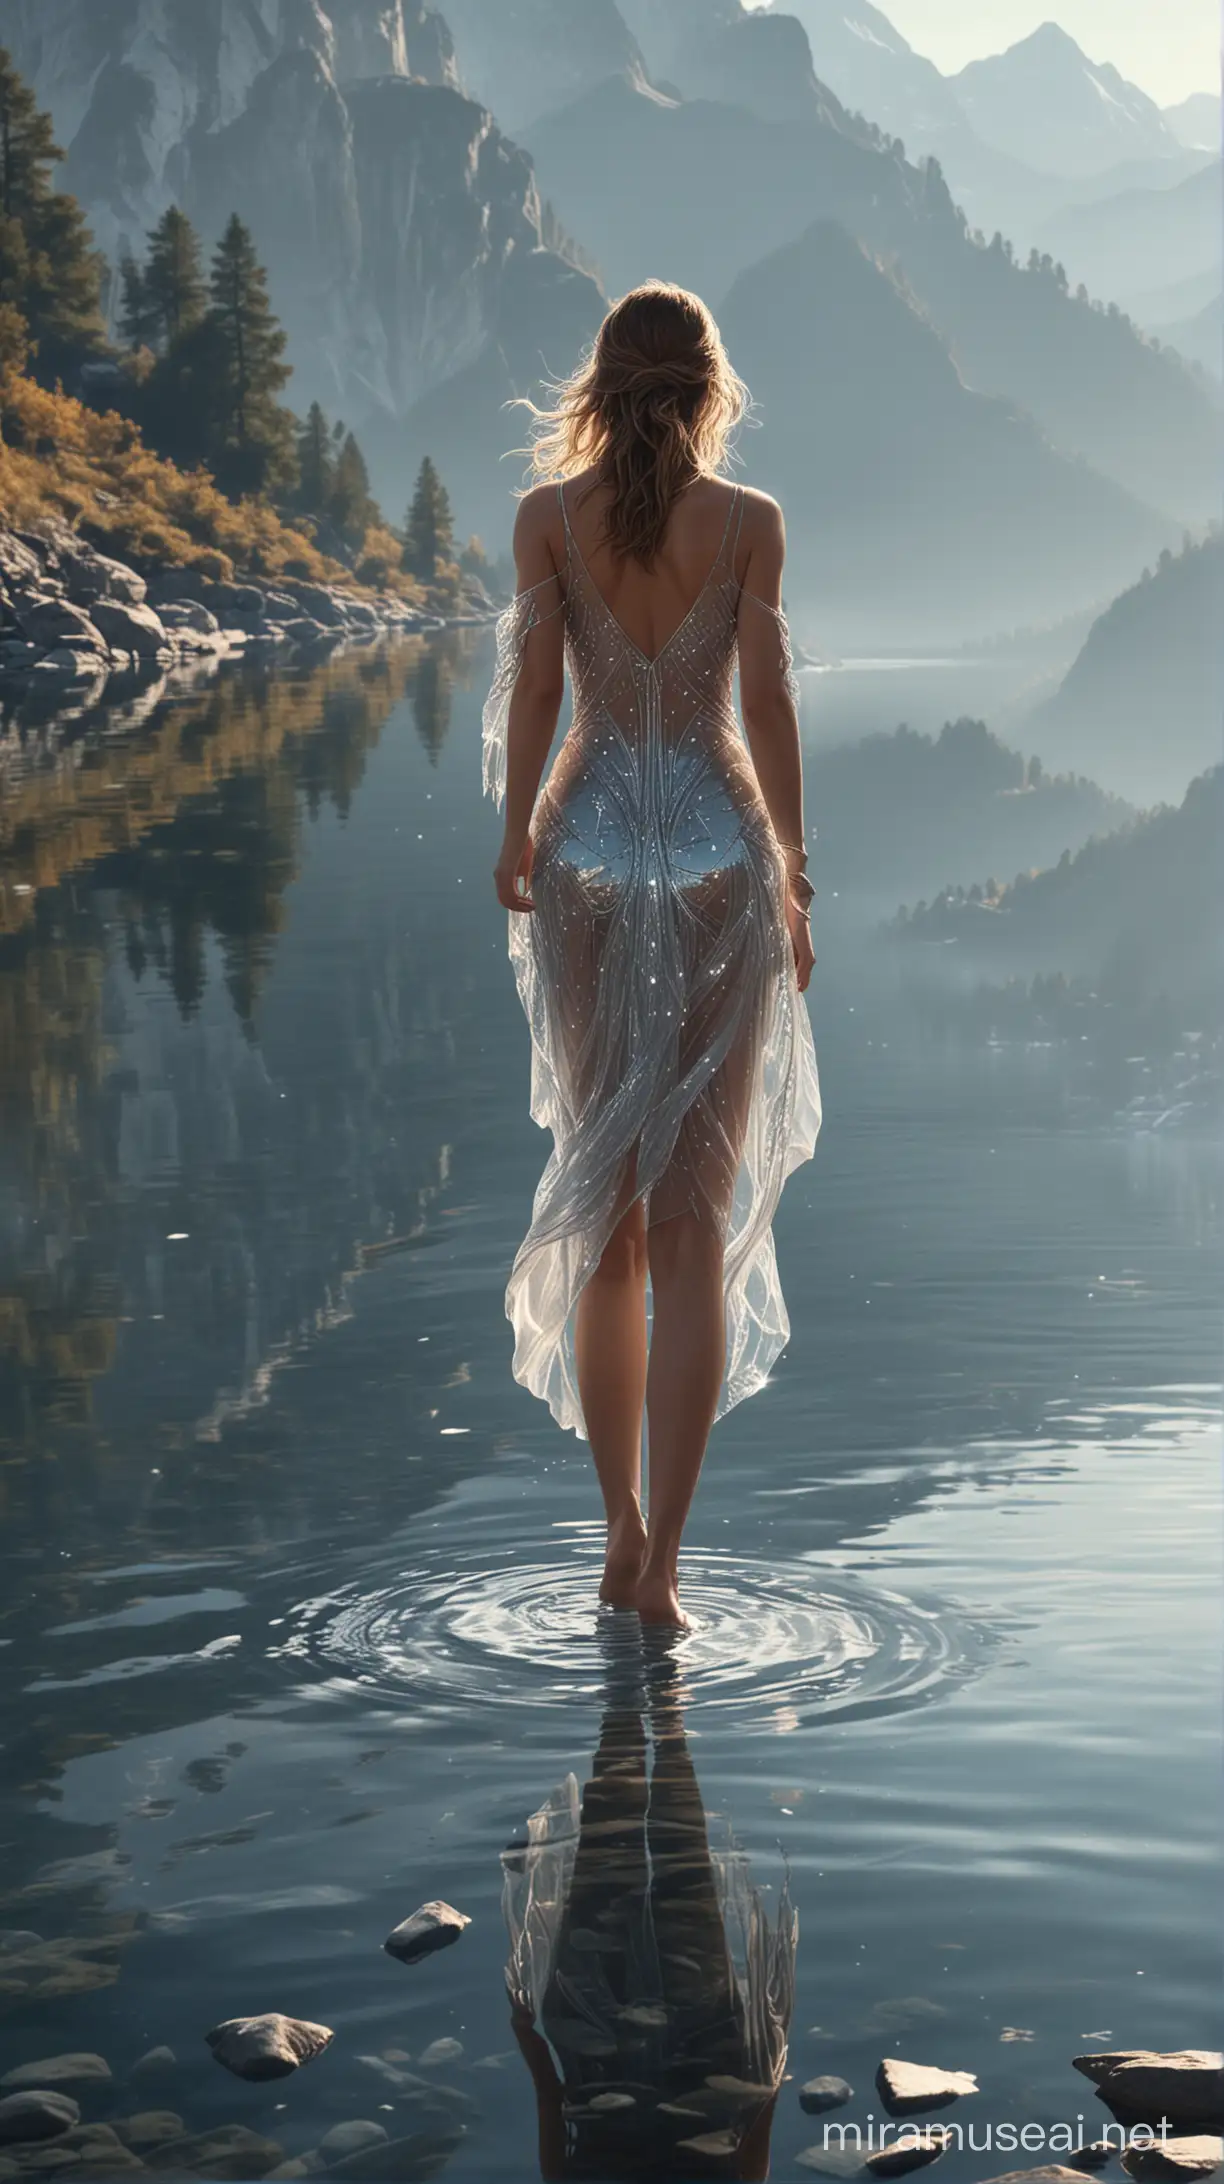 De manière très réaliste, une femme sublime en cristal, marchant sur un lac, au milieu des montagnes